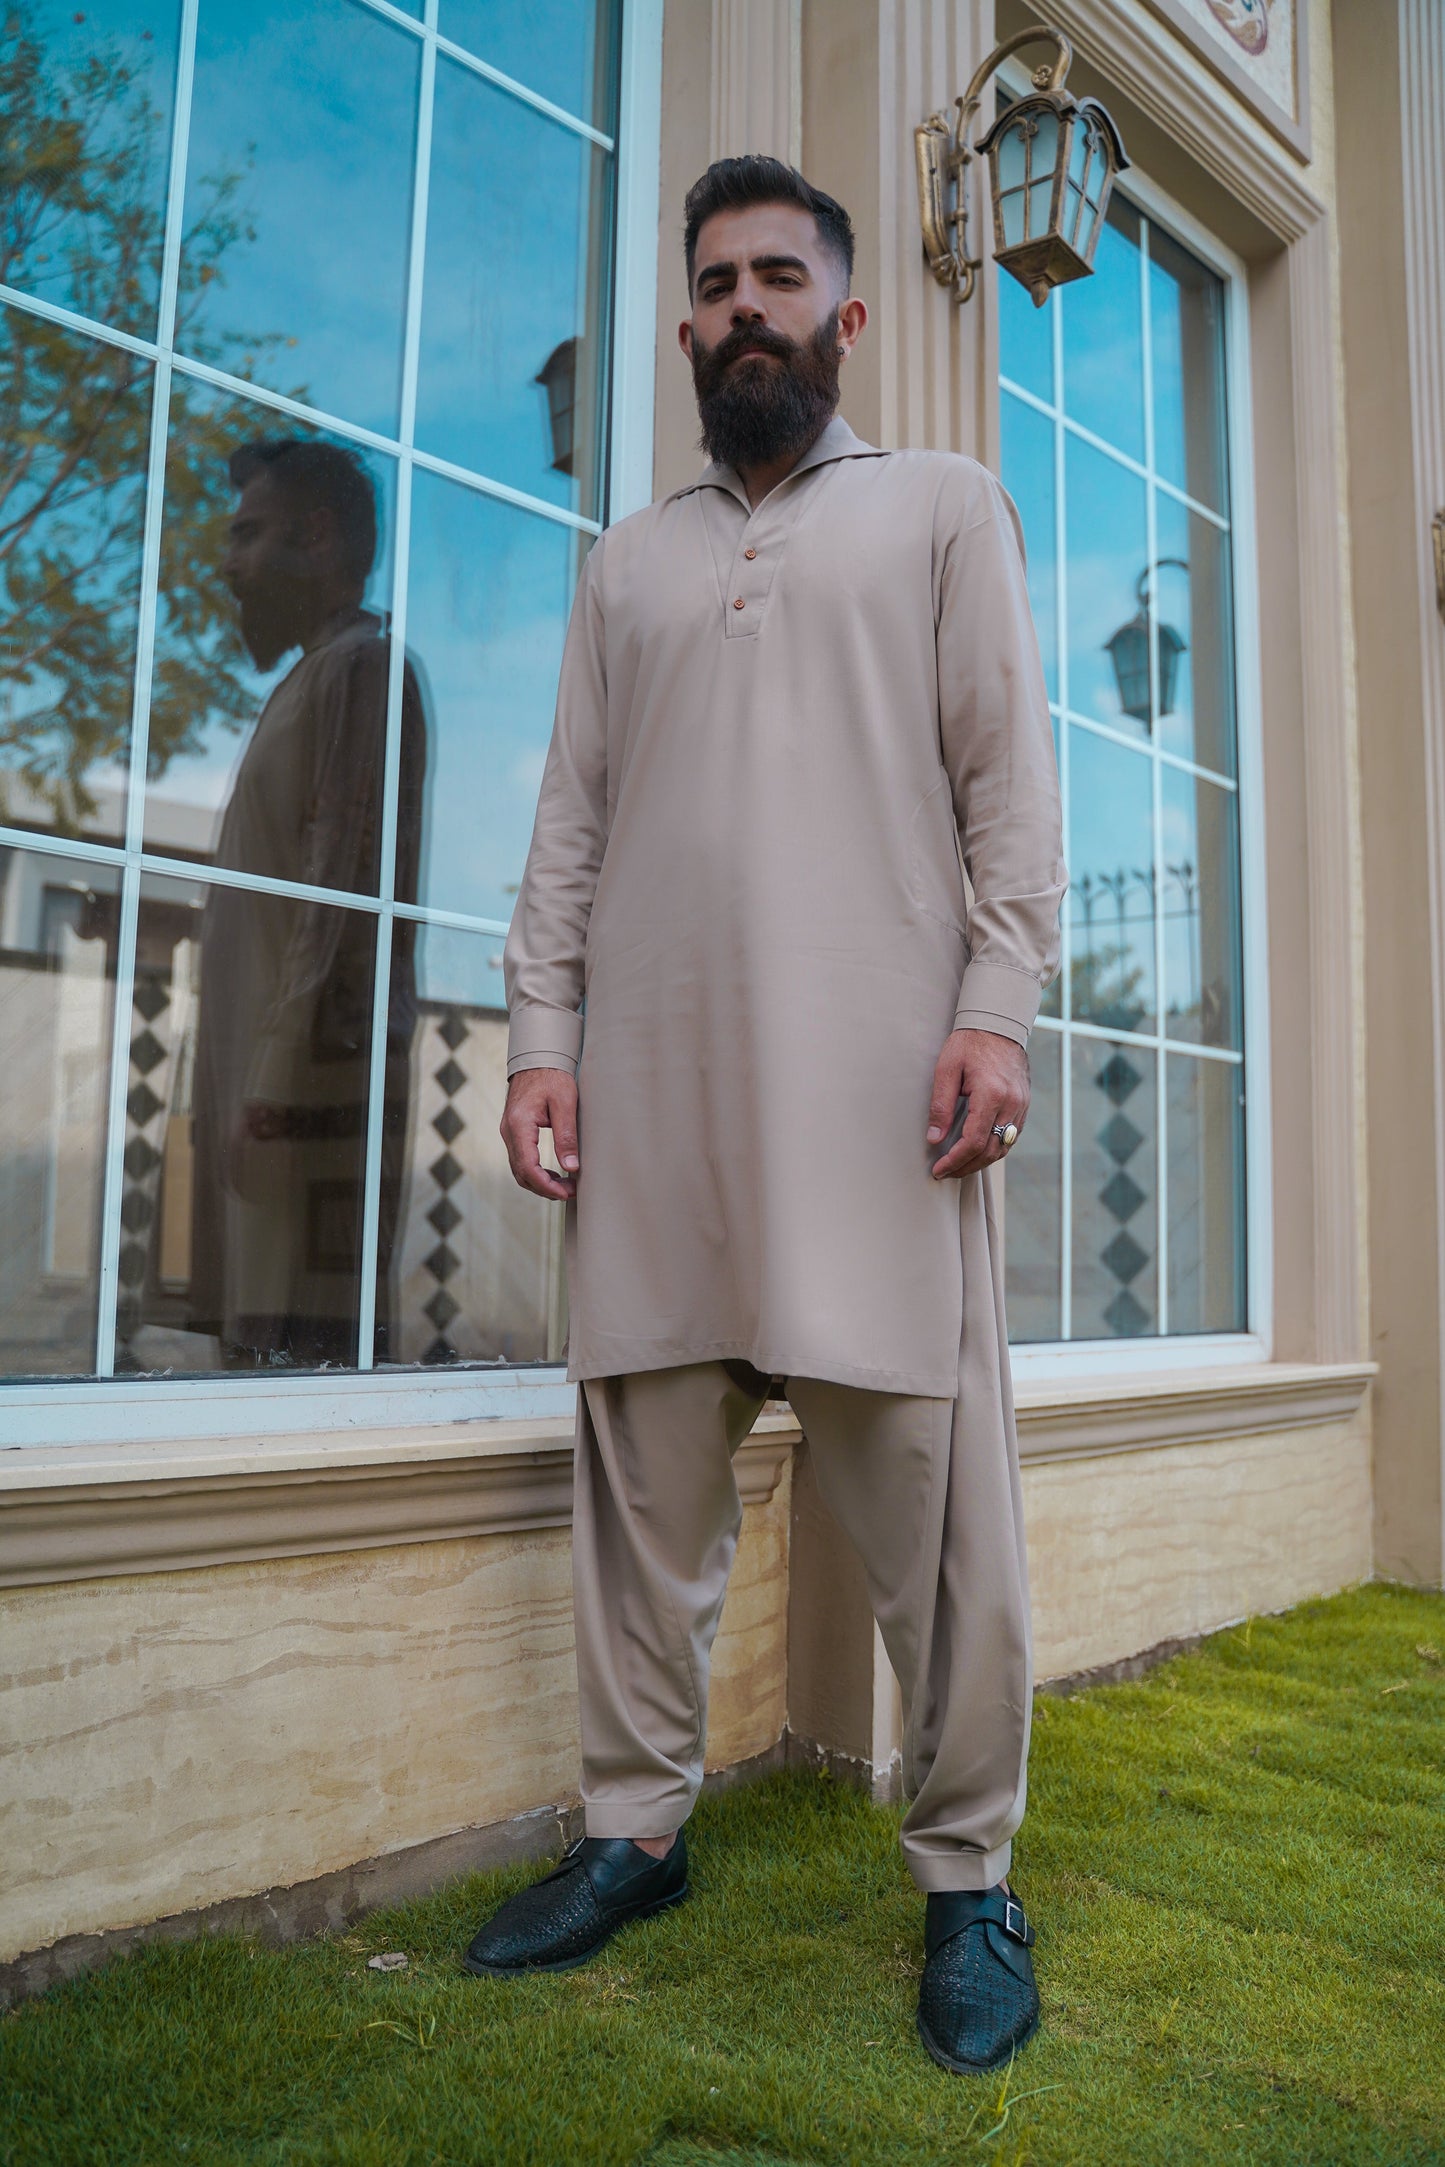 Skin Shalwar Kameez for Men, Monarchy Eid Special "Selentine"